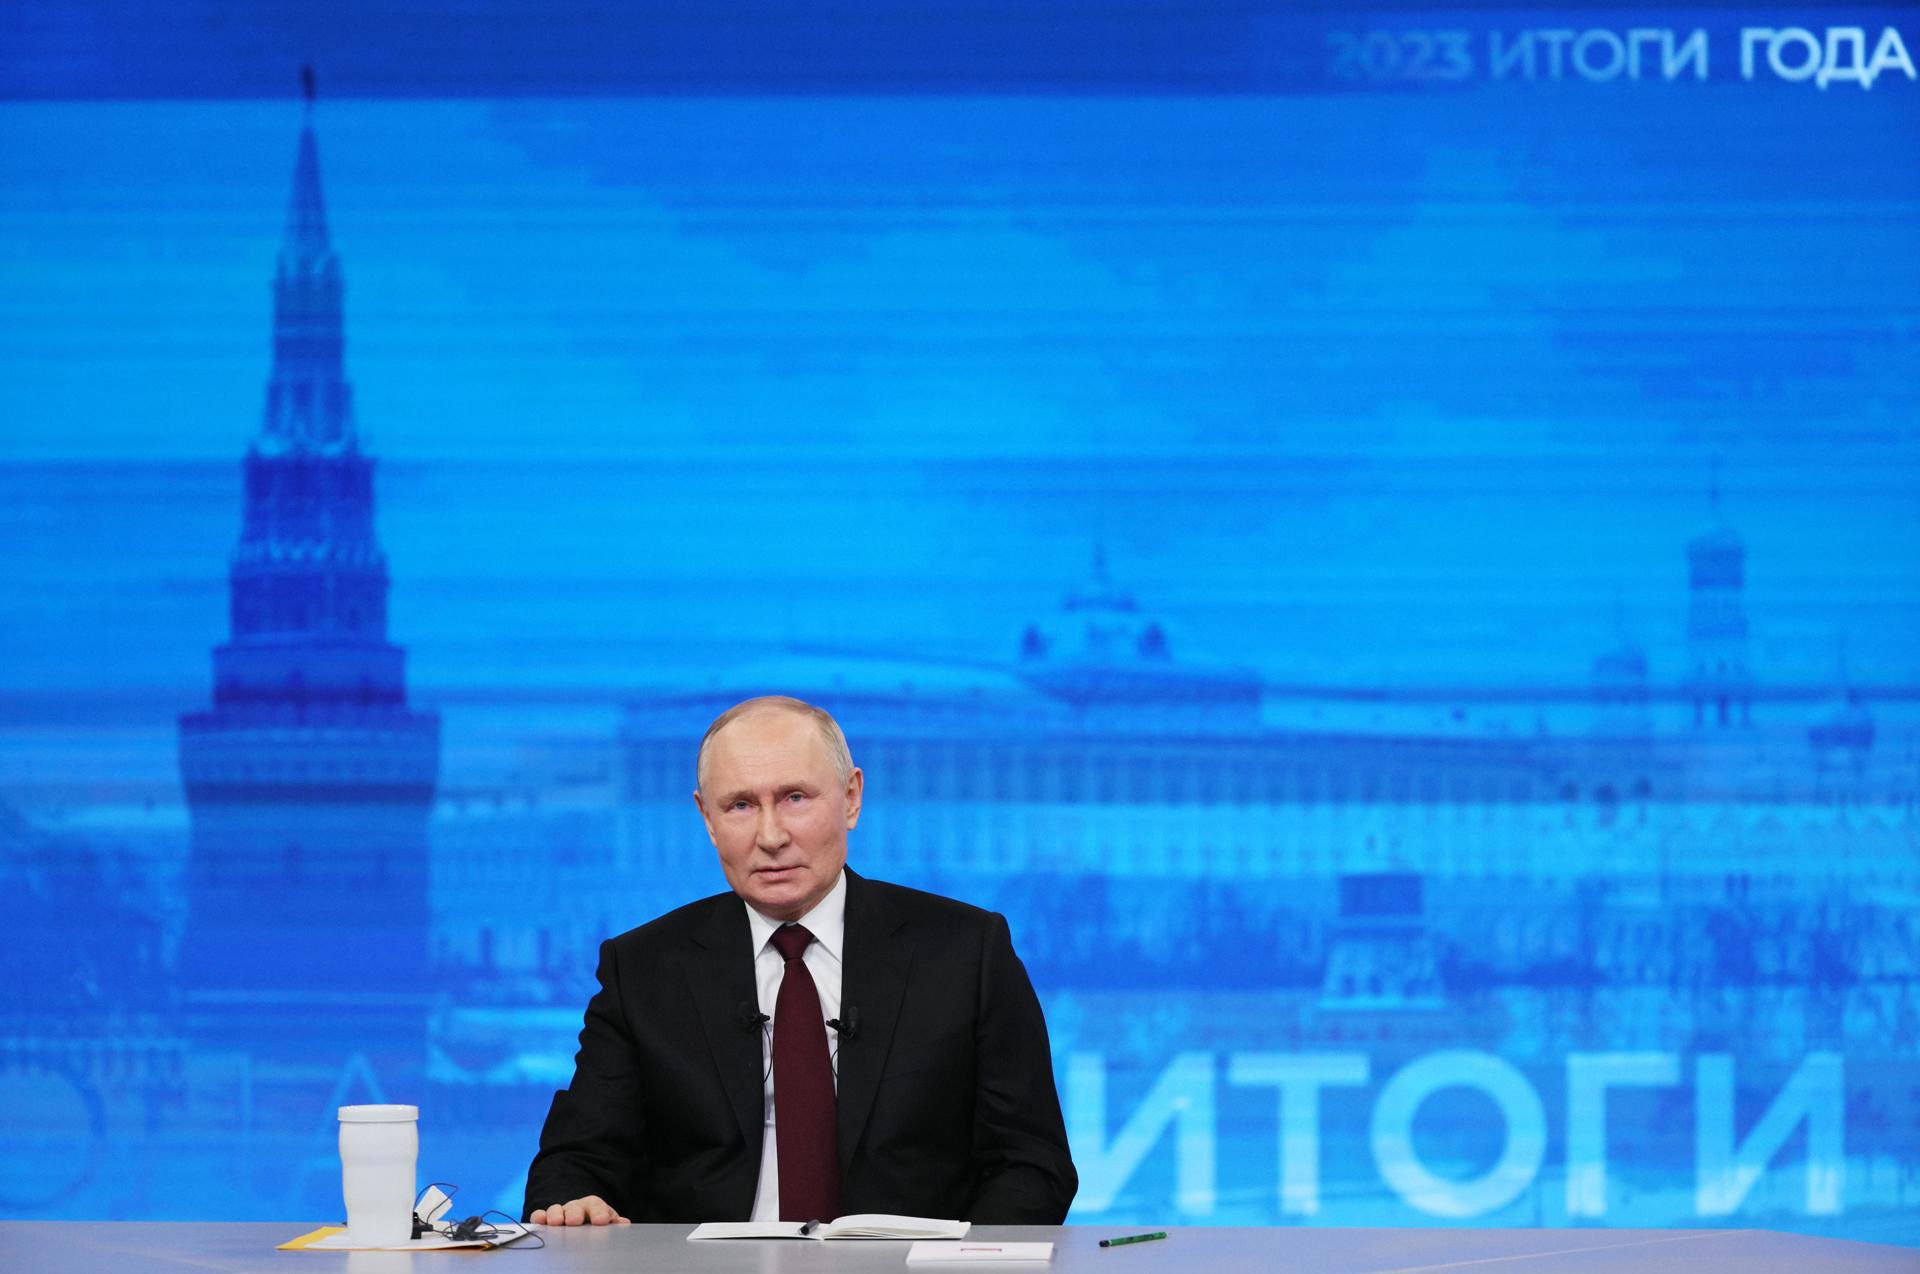 Putin aseguró que Rusia no tiene ningún interés en combatir con los países de la Otan